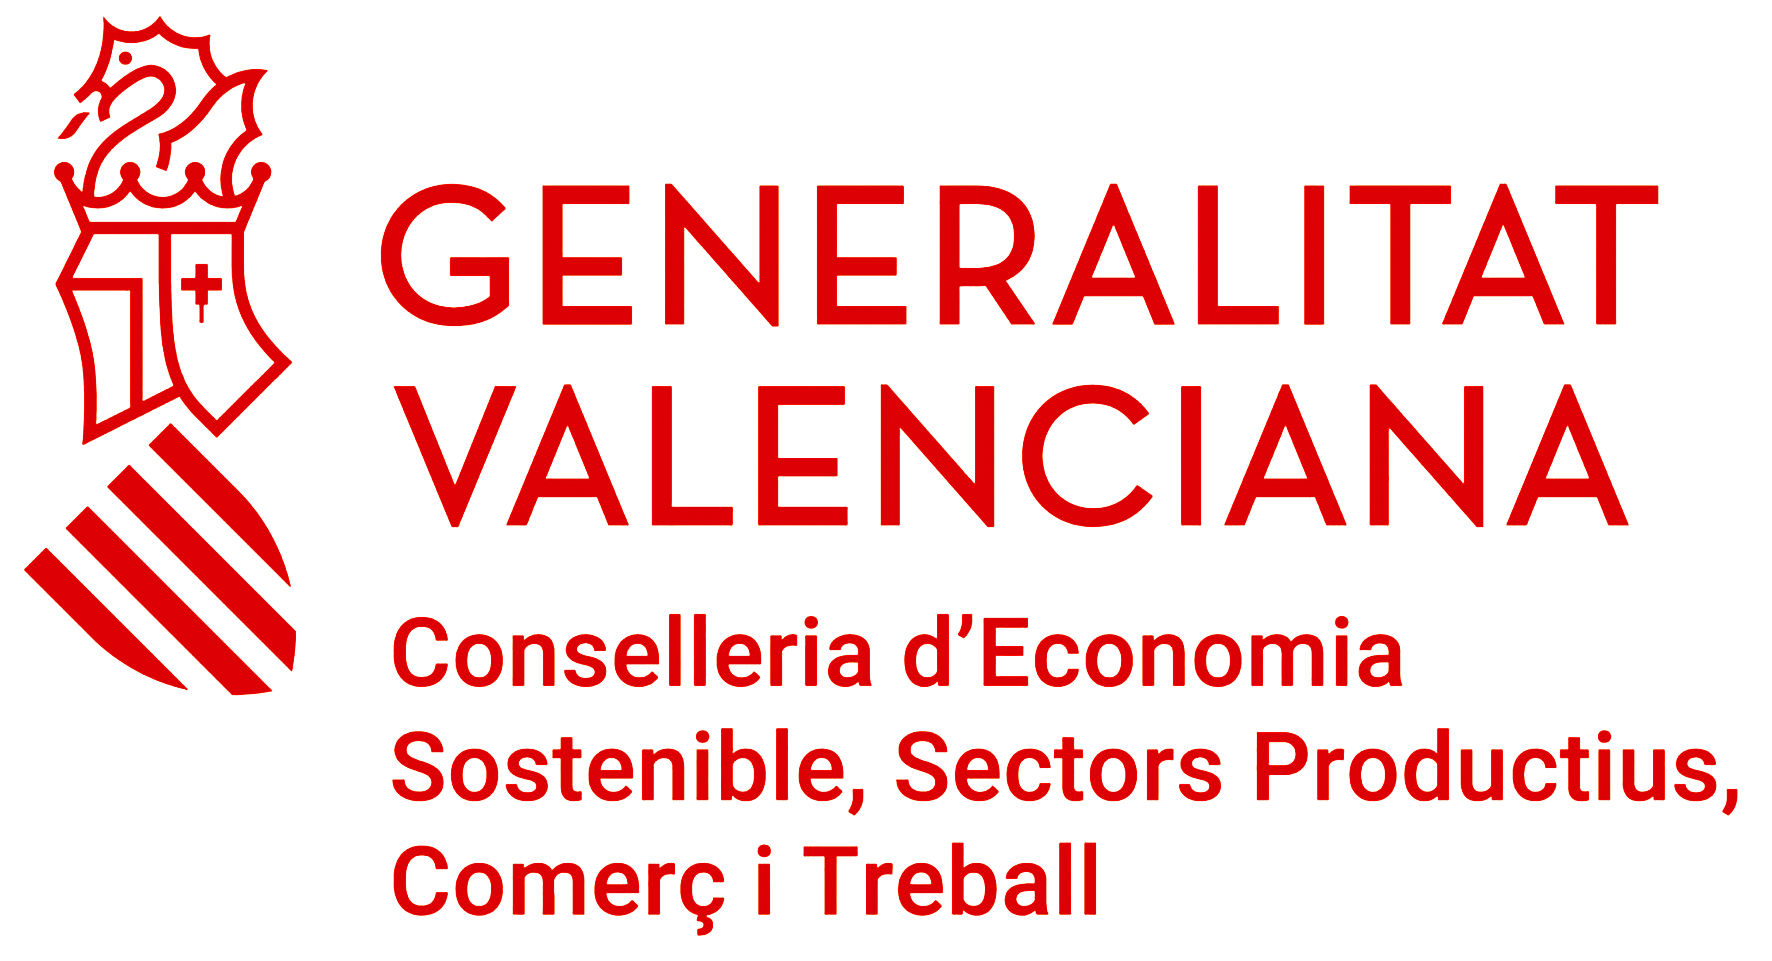 Generalitat Valenciana, Conselleria d'Economia Sostenible, Sectors Productius, Comerç i Treball.